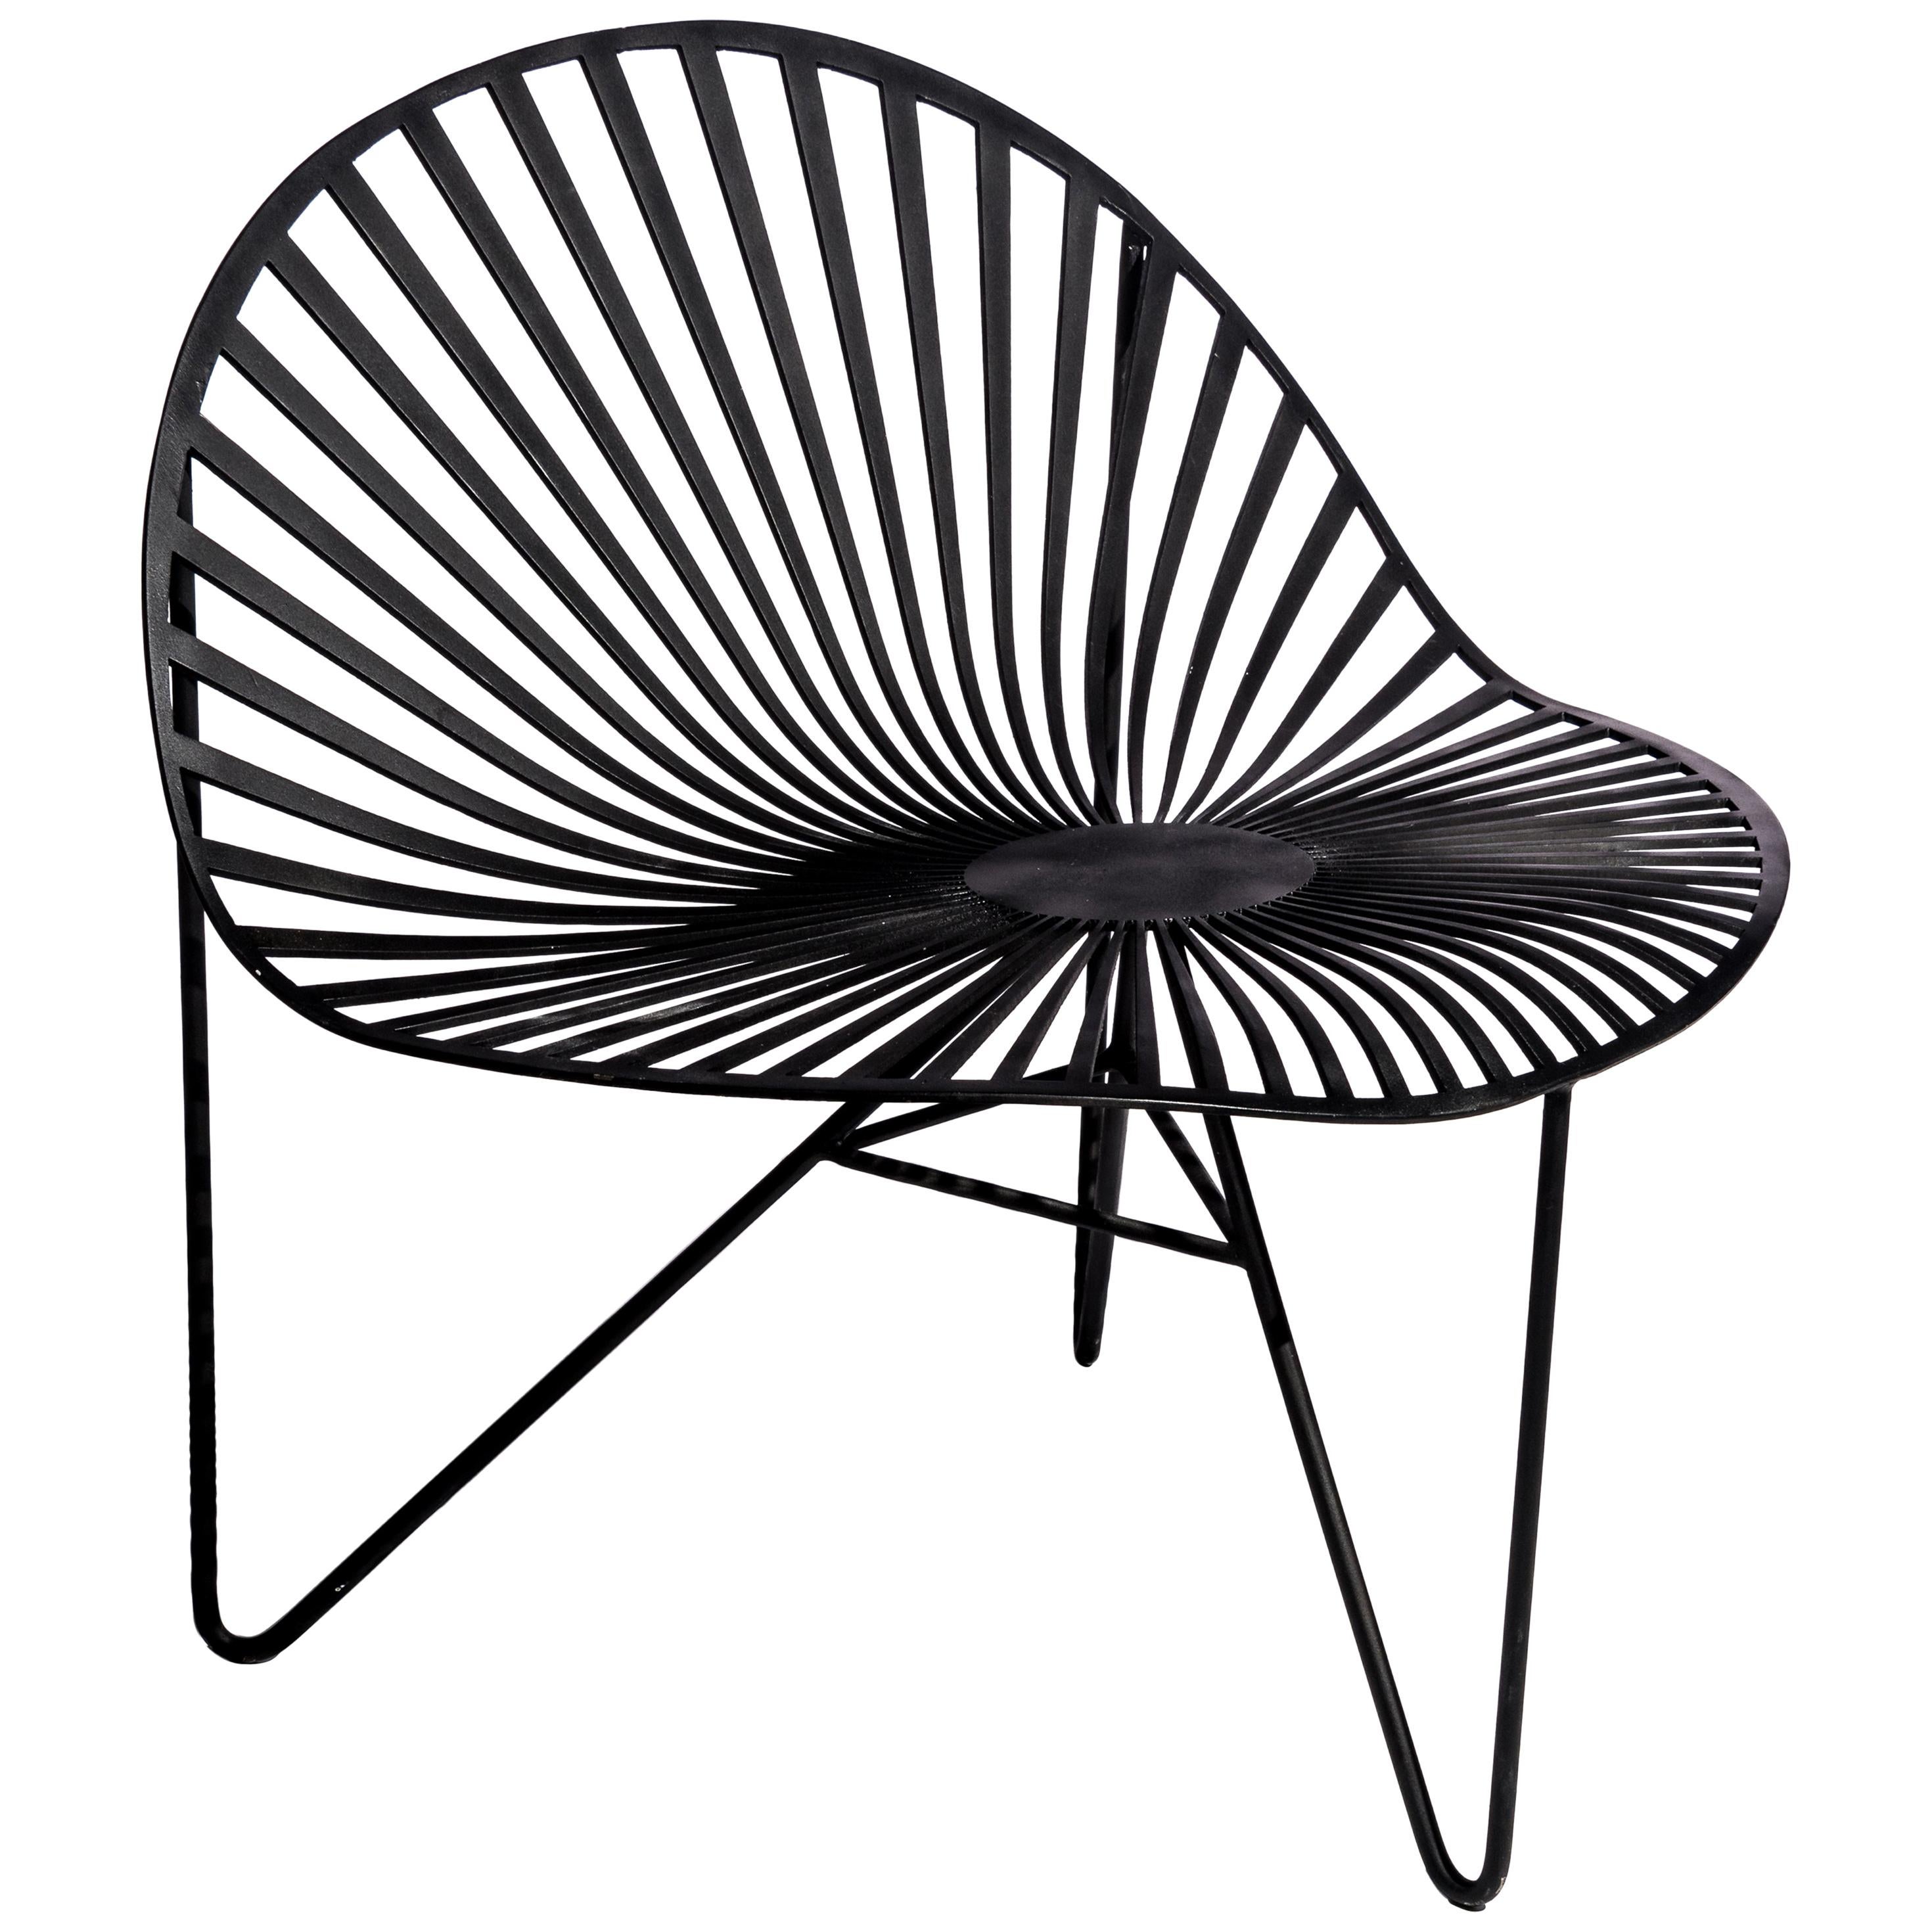 "Uba" Chair by Estudio Saba, Contemporary Design